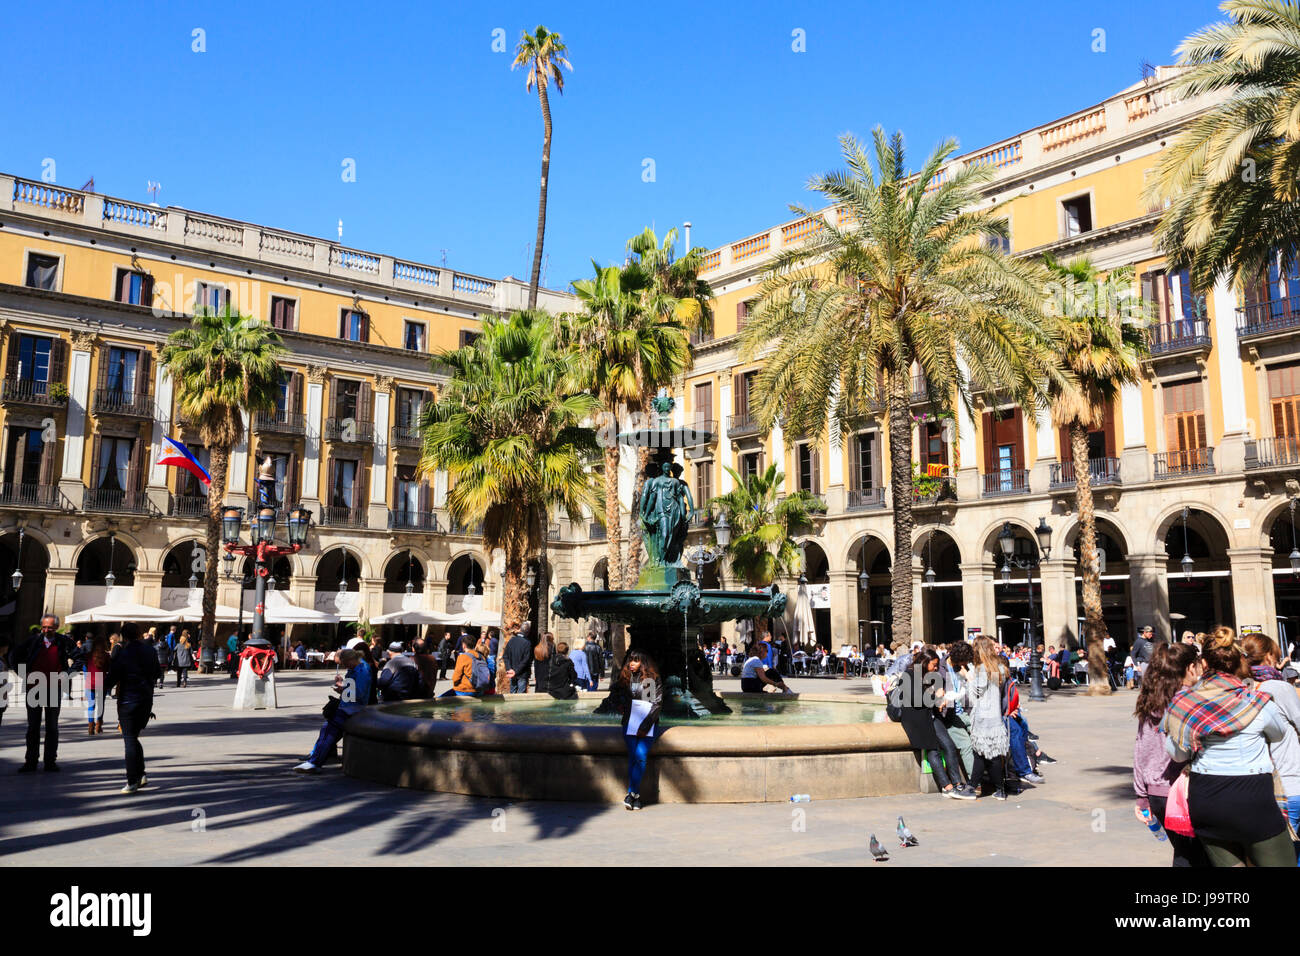 Les touristes s'asseoir sous la fontaine des trois Grâces - beauté,charme et la joie, dans Plaça Reial dans le Barri Gotic de Barcelone, Catalogne, Espagne. Banque D'Images